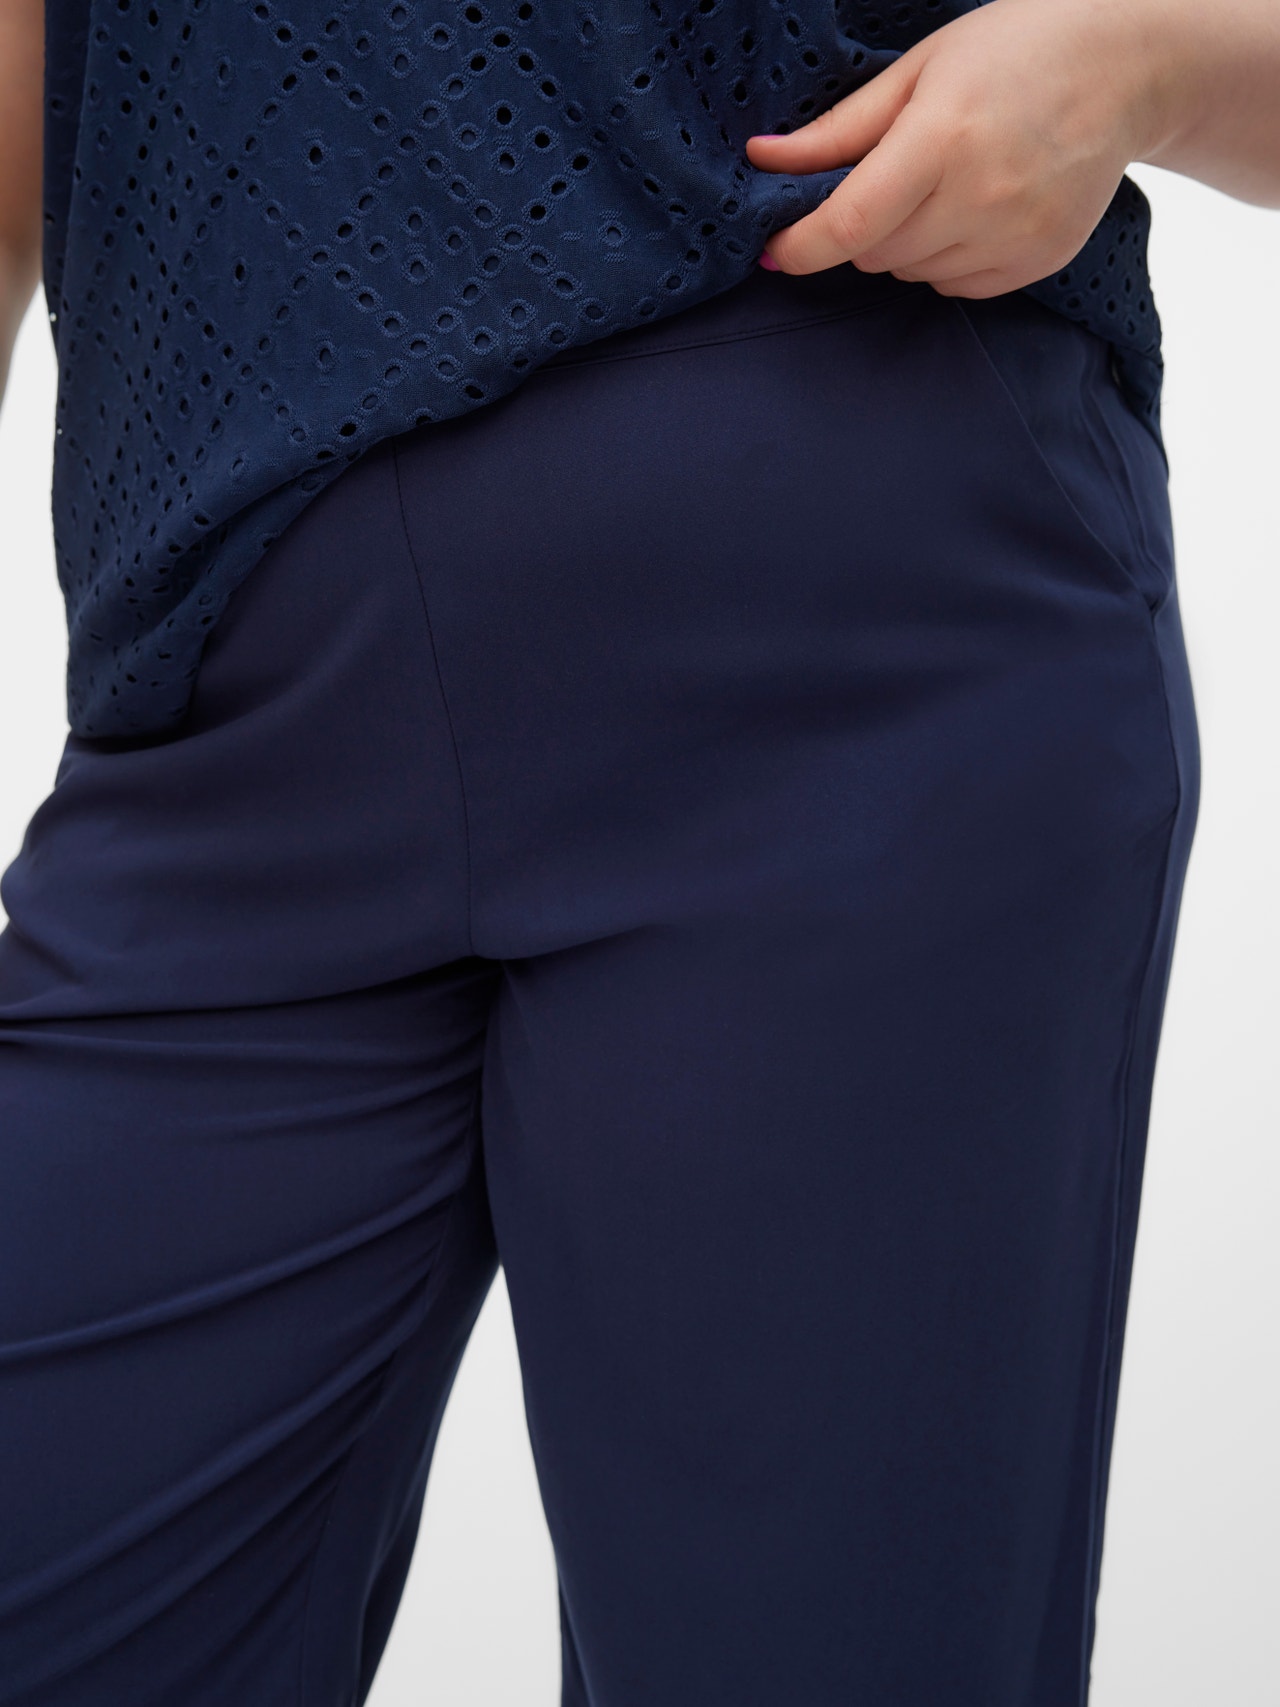 Vero Moda VMCEASY Pantalones -Navy Blazer - 10308723